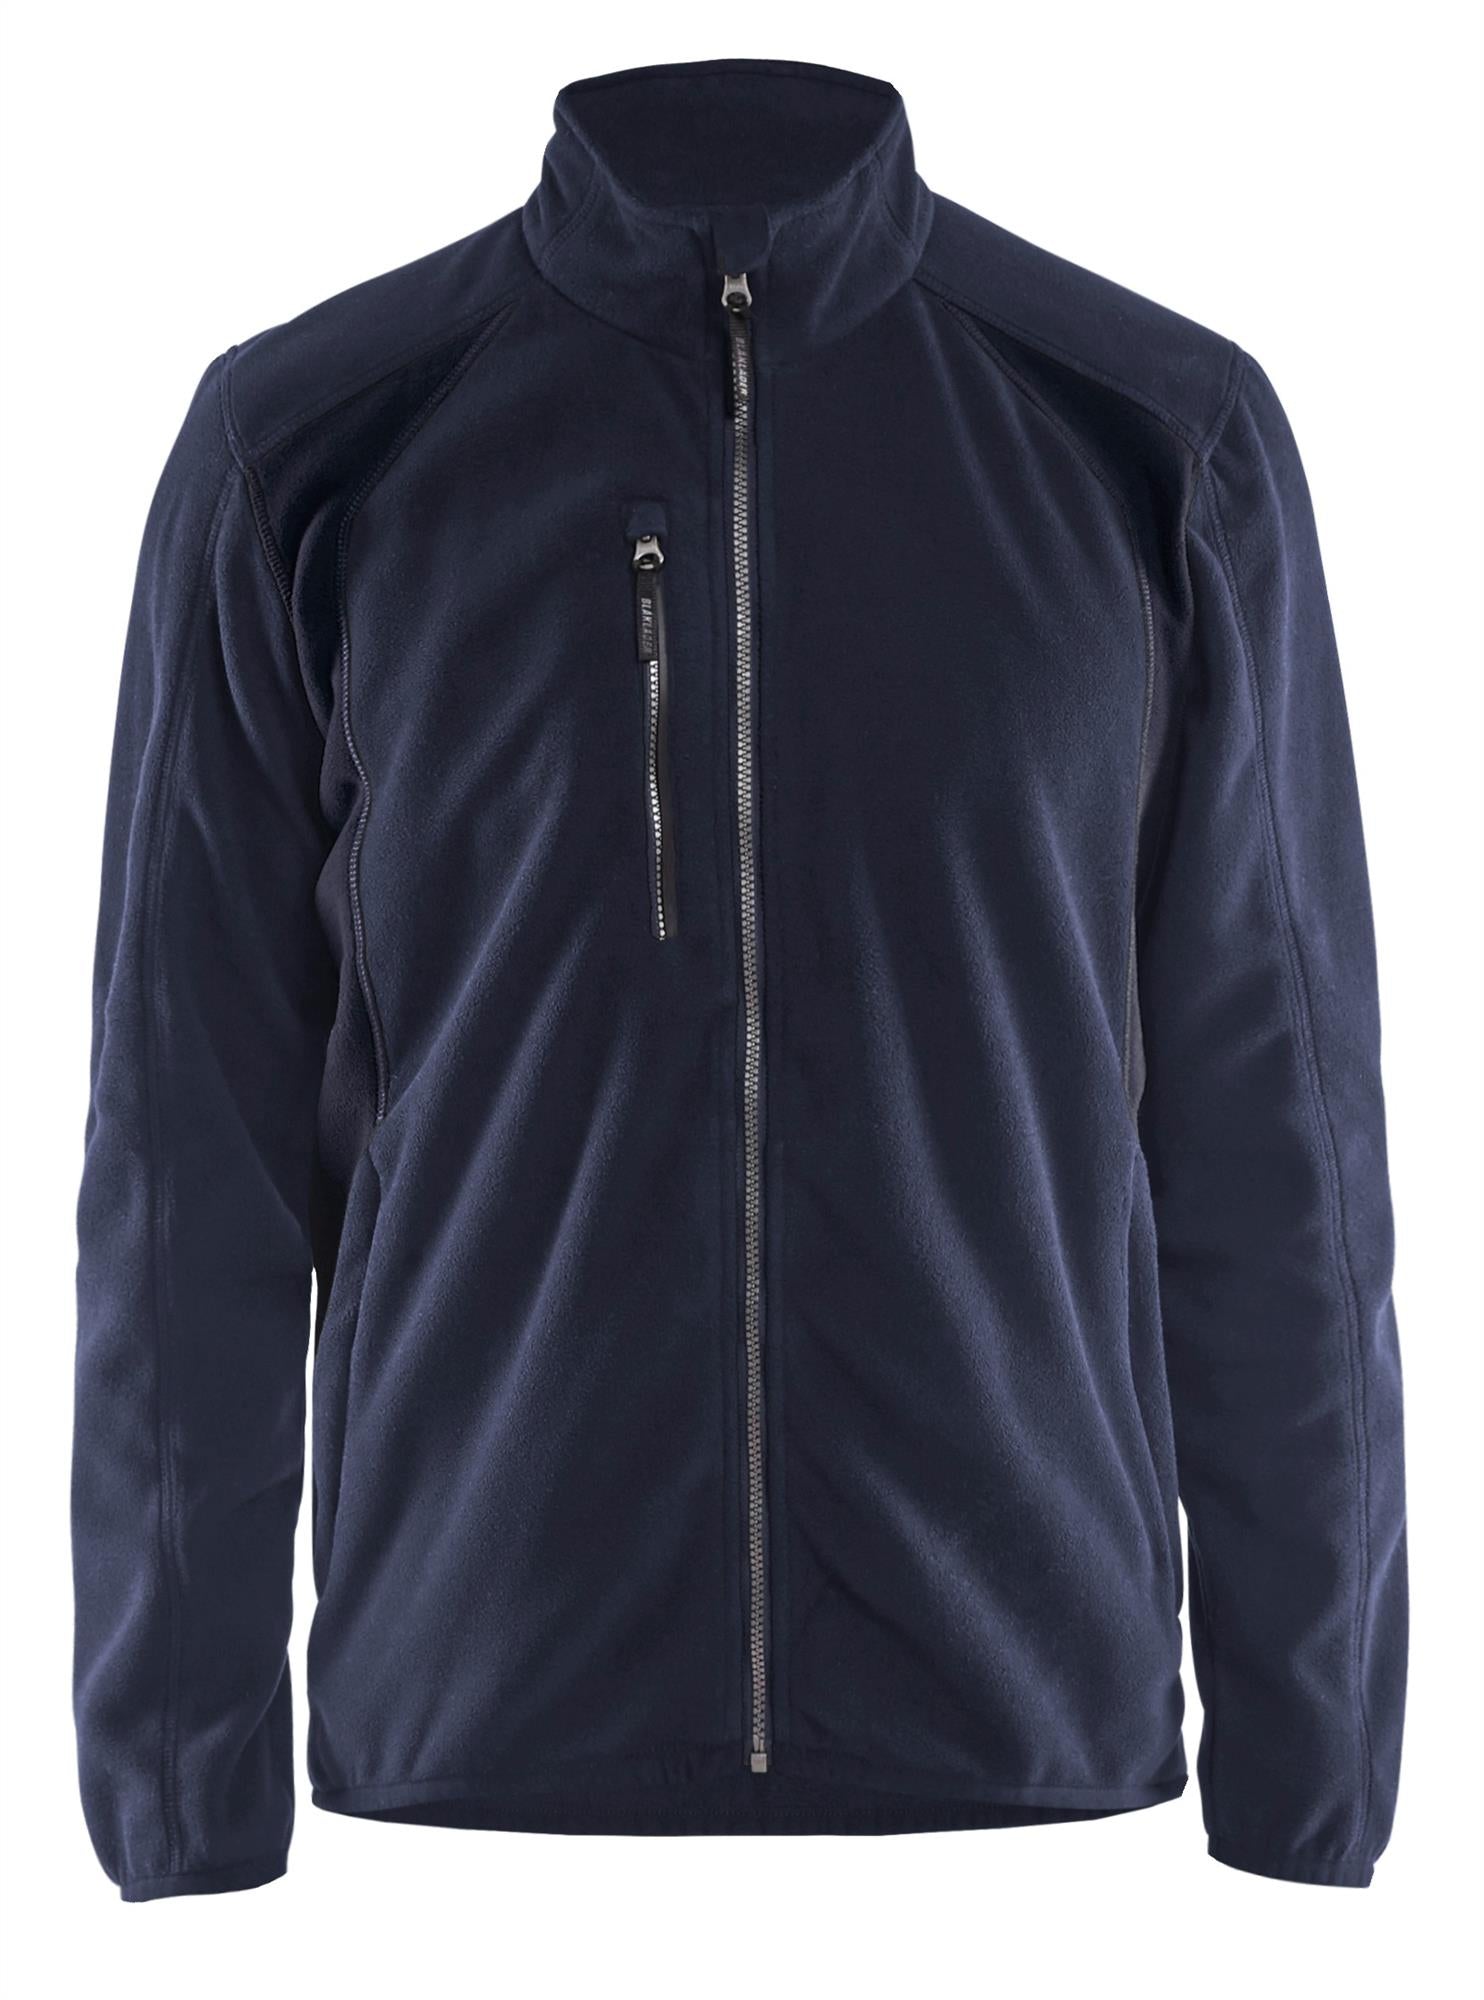 Blaklader navy/black contrast anti-pill polyester fleece jacket #4730